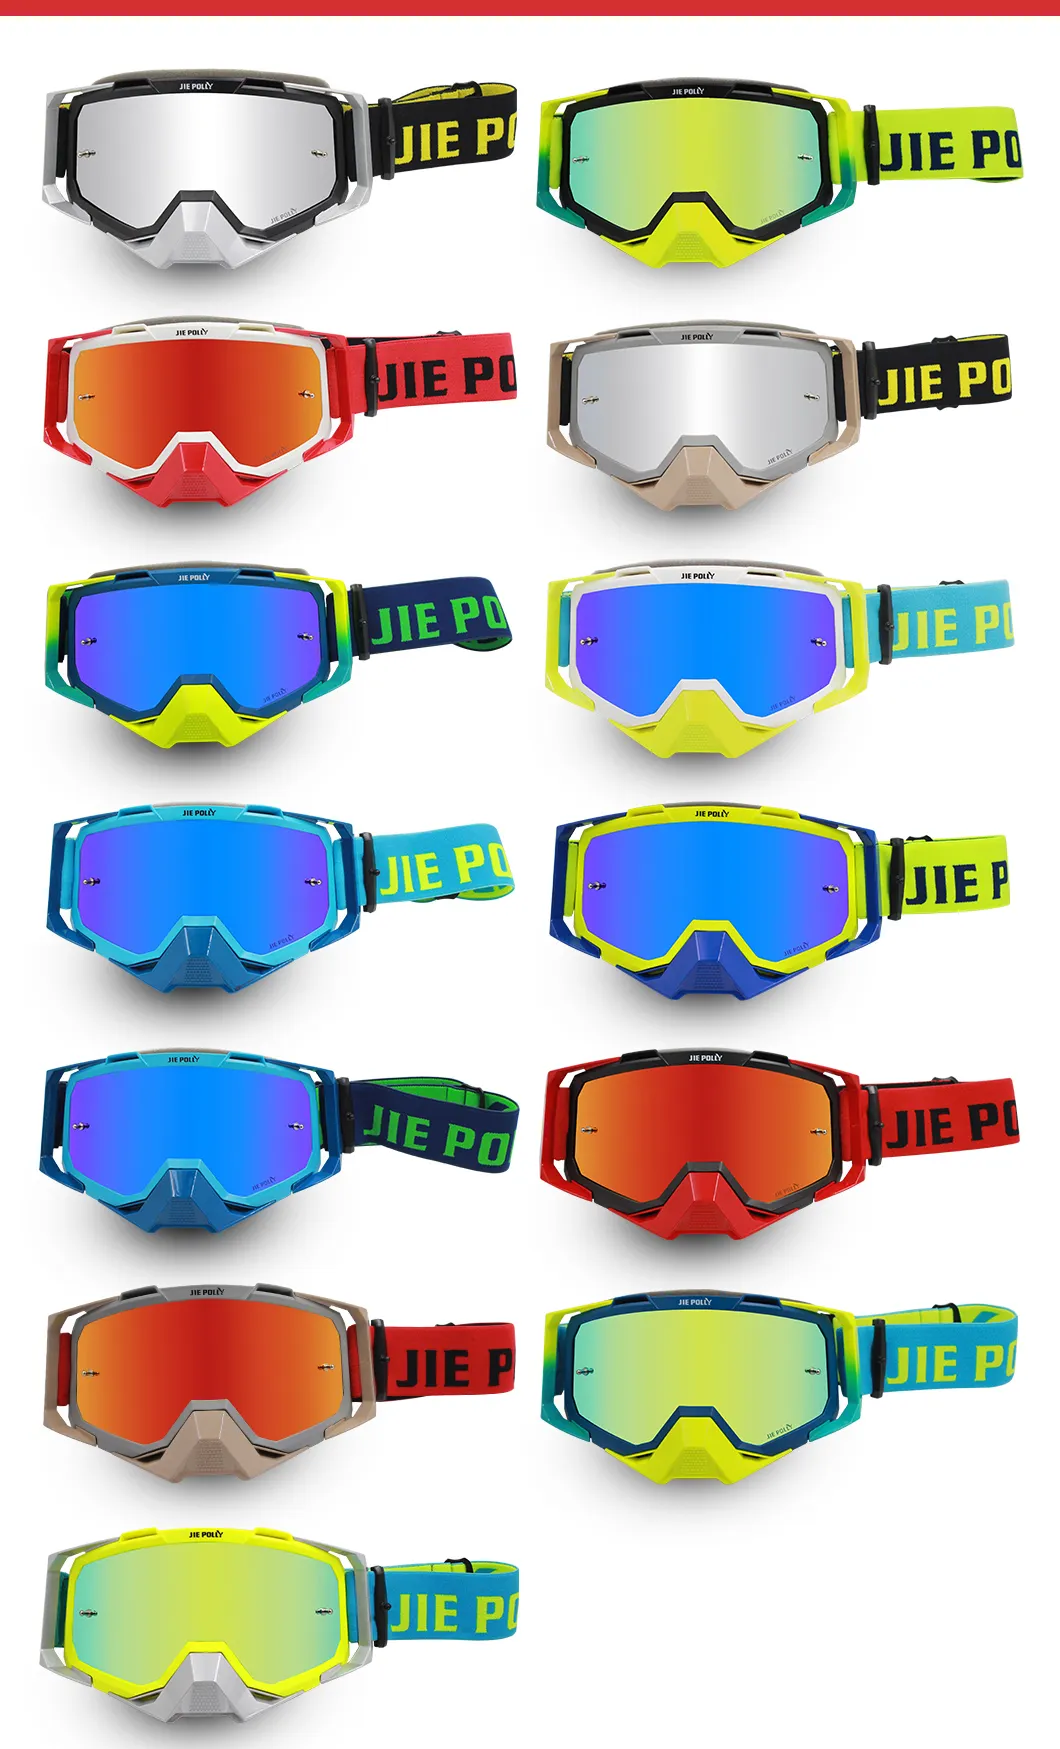 Gafas de motocicleta de fábrica gafas gafas Moto UV400 MX Offroad gafas de Motocross gafas de deportes al aire libre gafas de ca